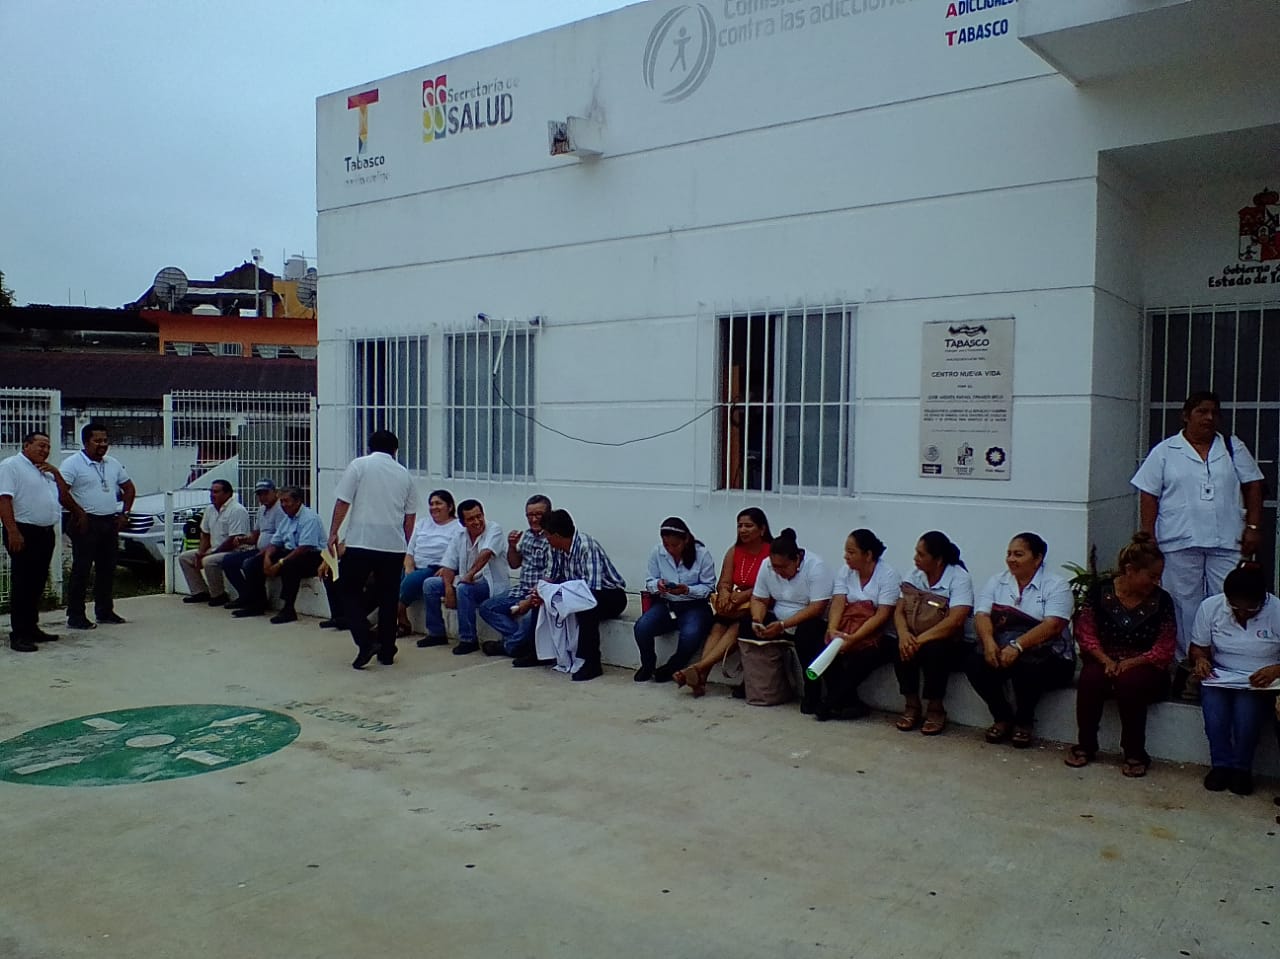 A paro laboral trabajadores de salud en Tabasco